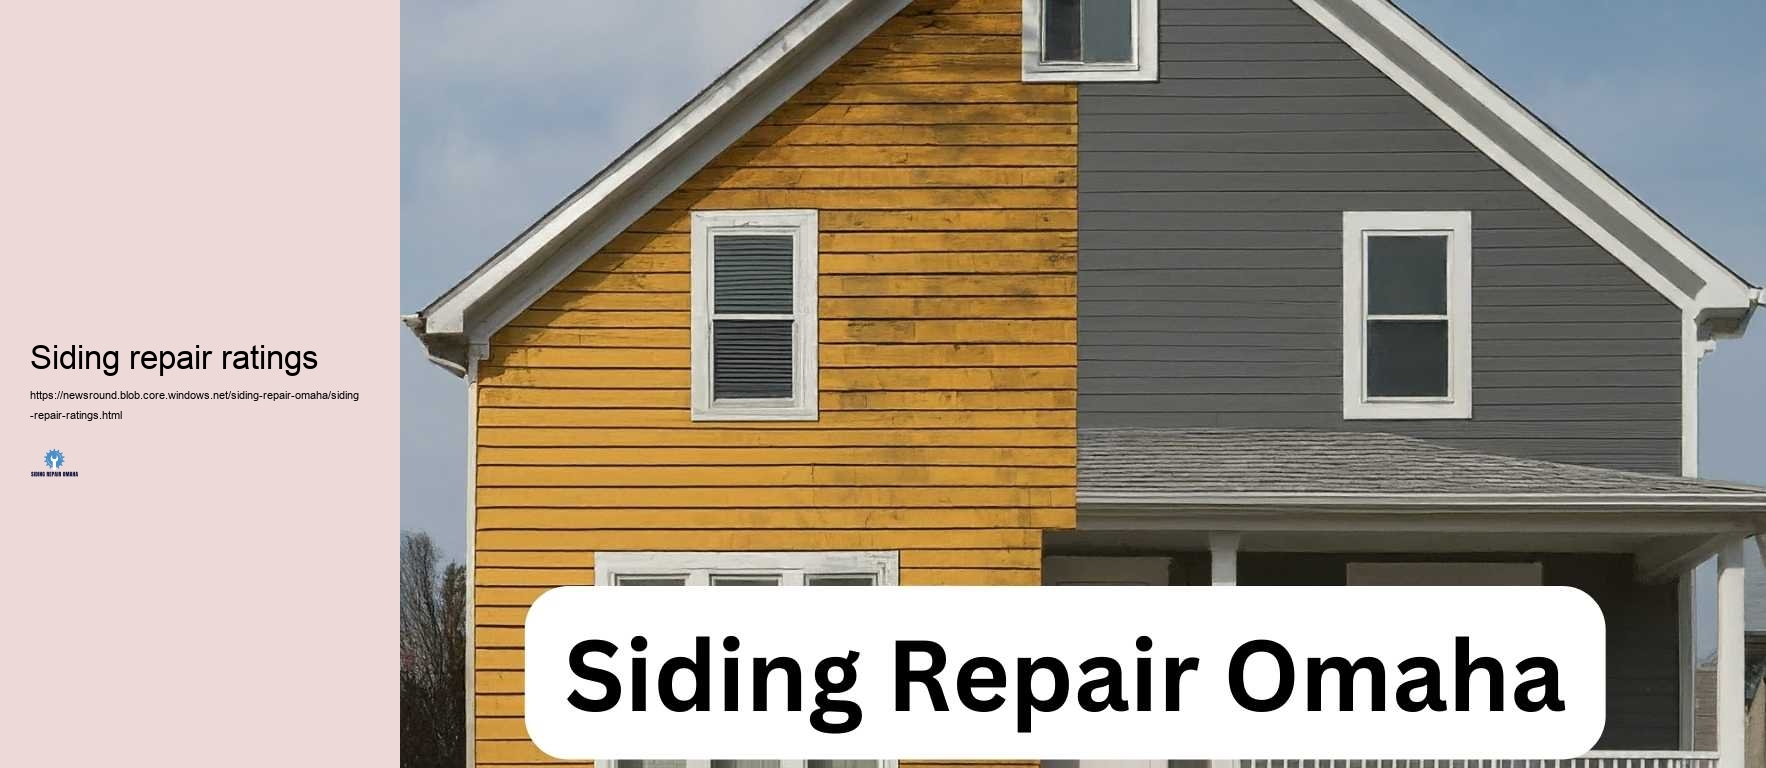 Siding repair ratings